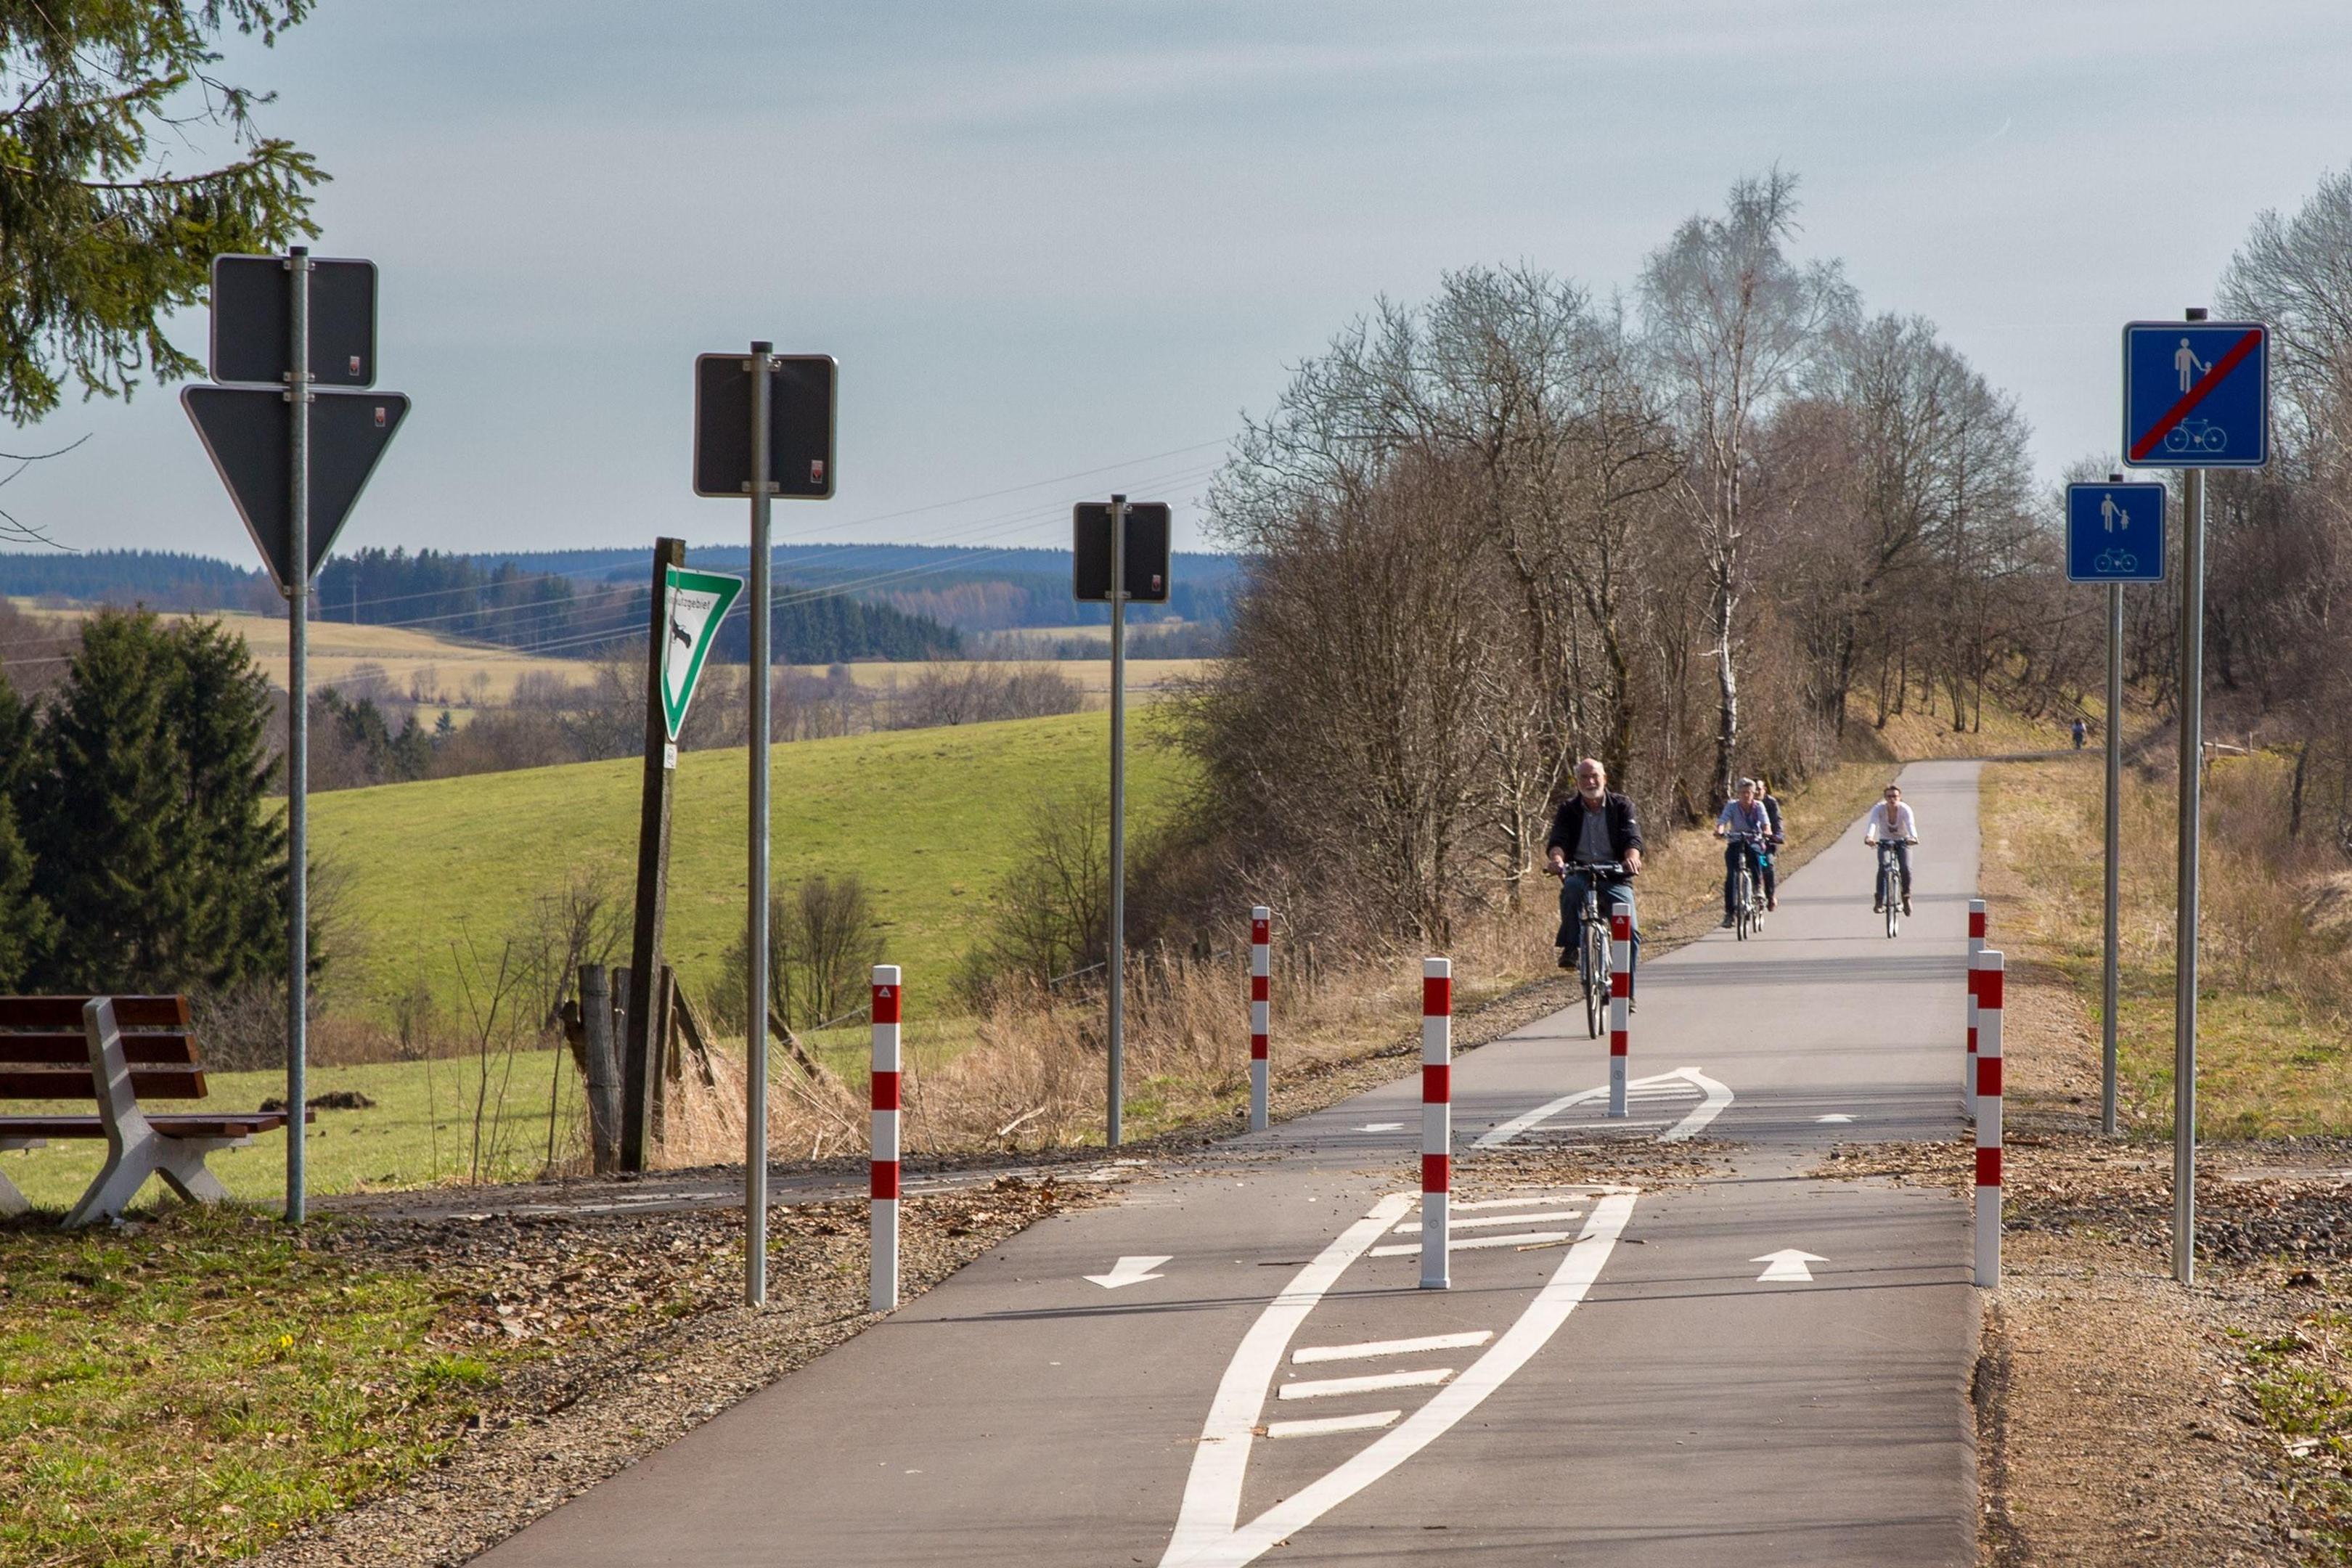 Radfahren hat im Tourismus bereits eine große Bedeutung für die Nordeifel. Bei diesem Projekt steht nun der Alltagsverkehr im Vordergrund.